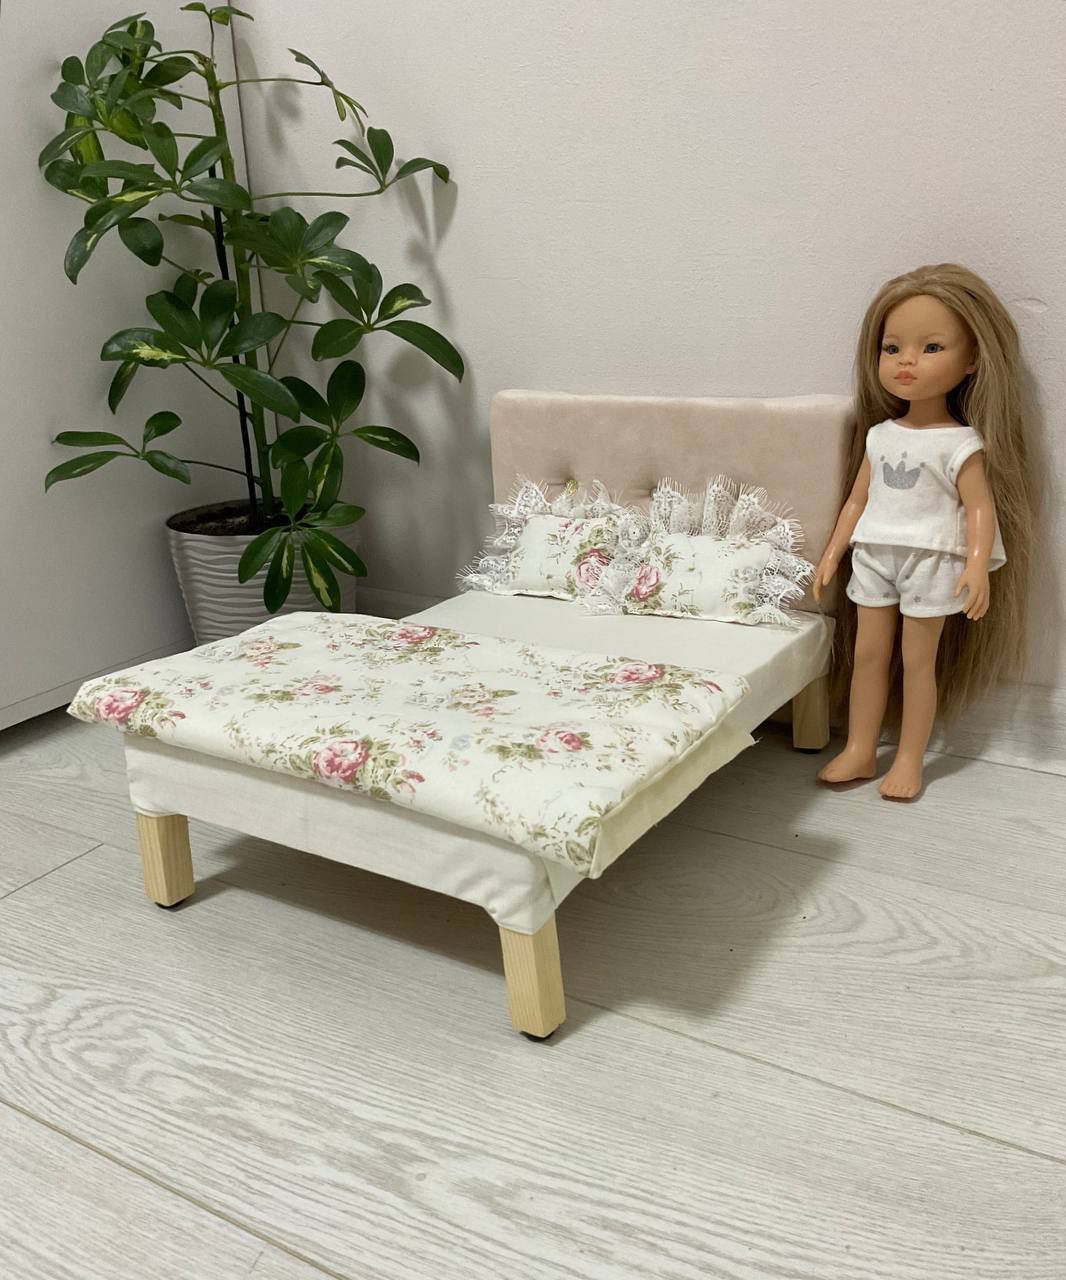 Ліжко для ляльки до 38 см типу Paola Reina, Barbie та інш.Ручна робота